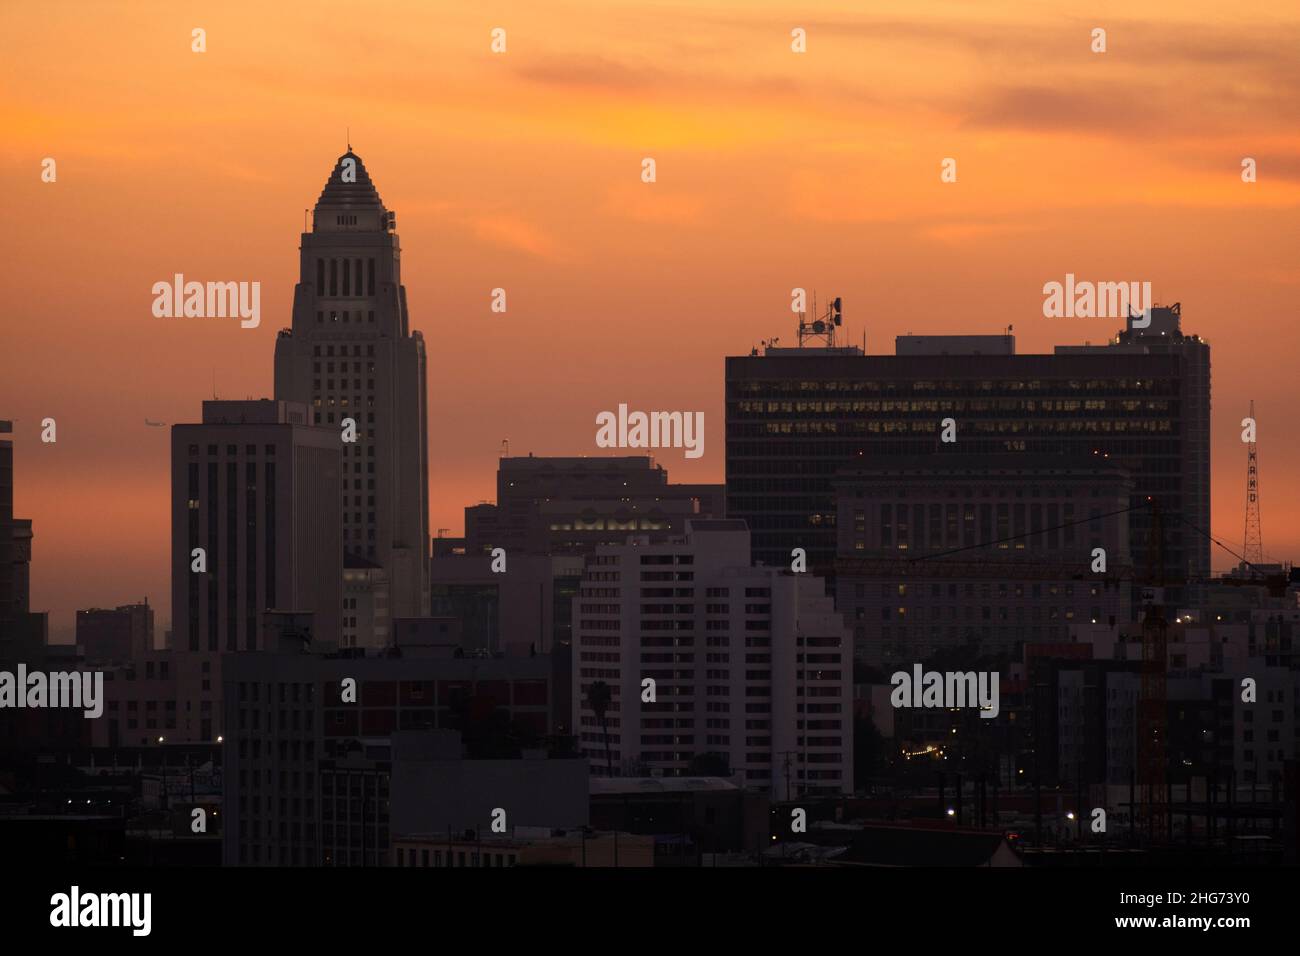 Ikonische Aussicht auf das Rathaus von Los Angeles bei Sonnenuntergang Stockfoto